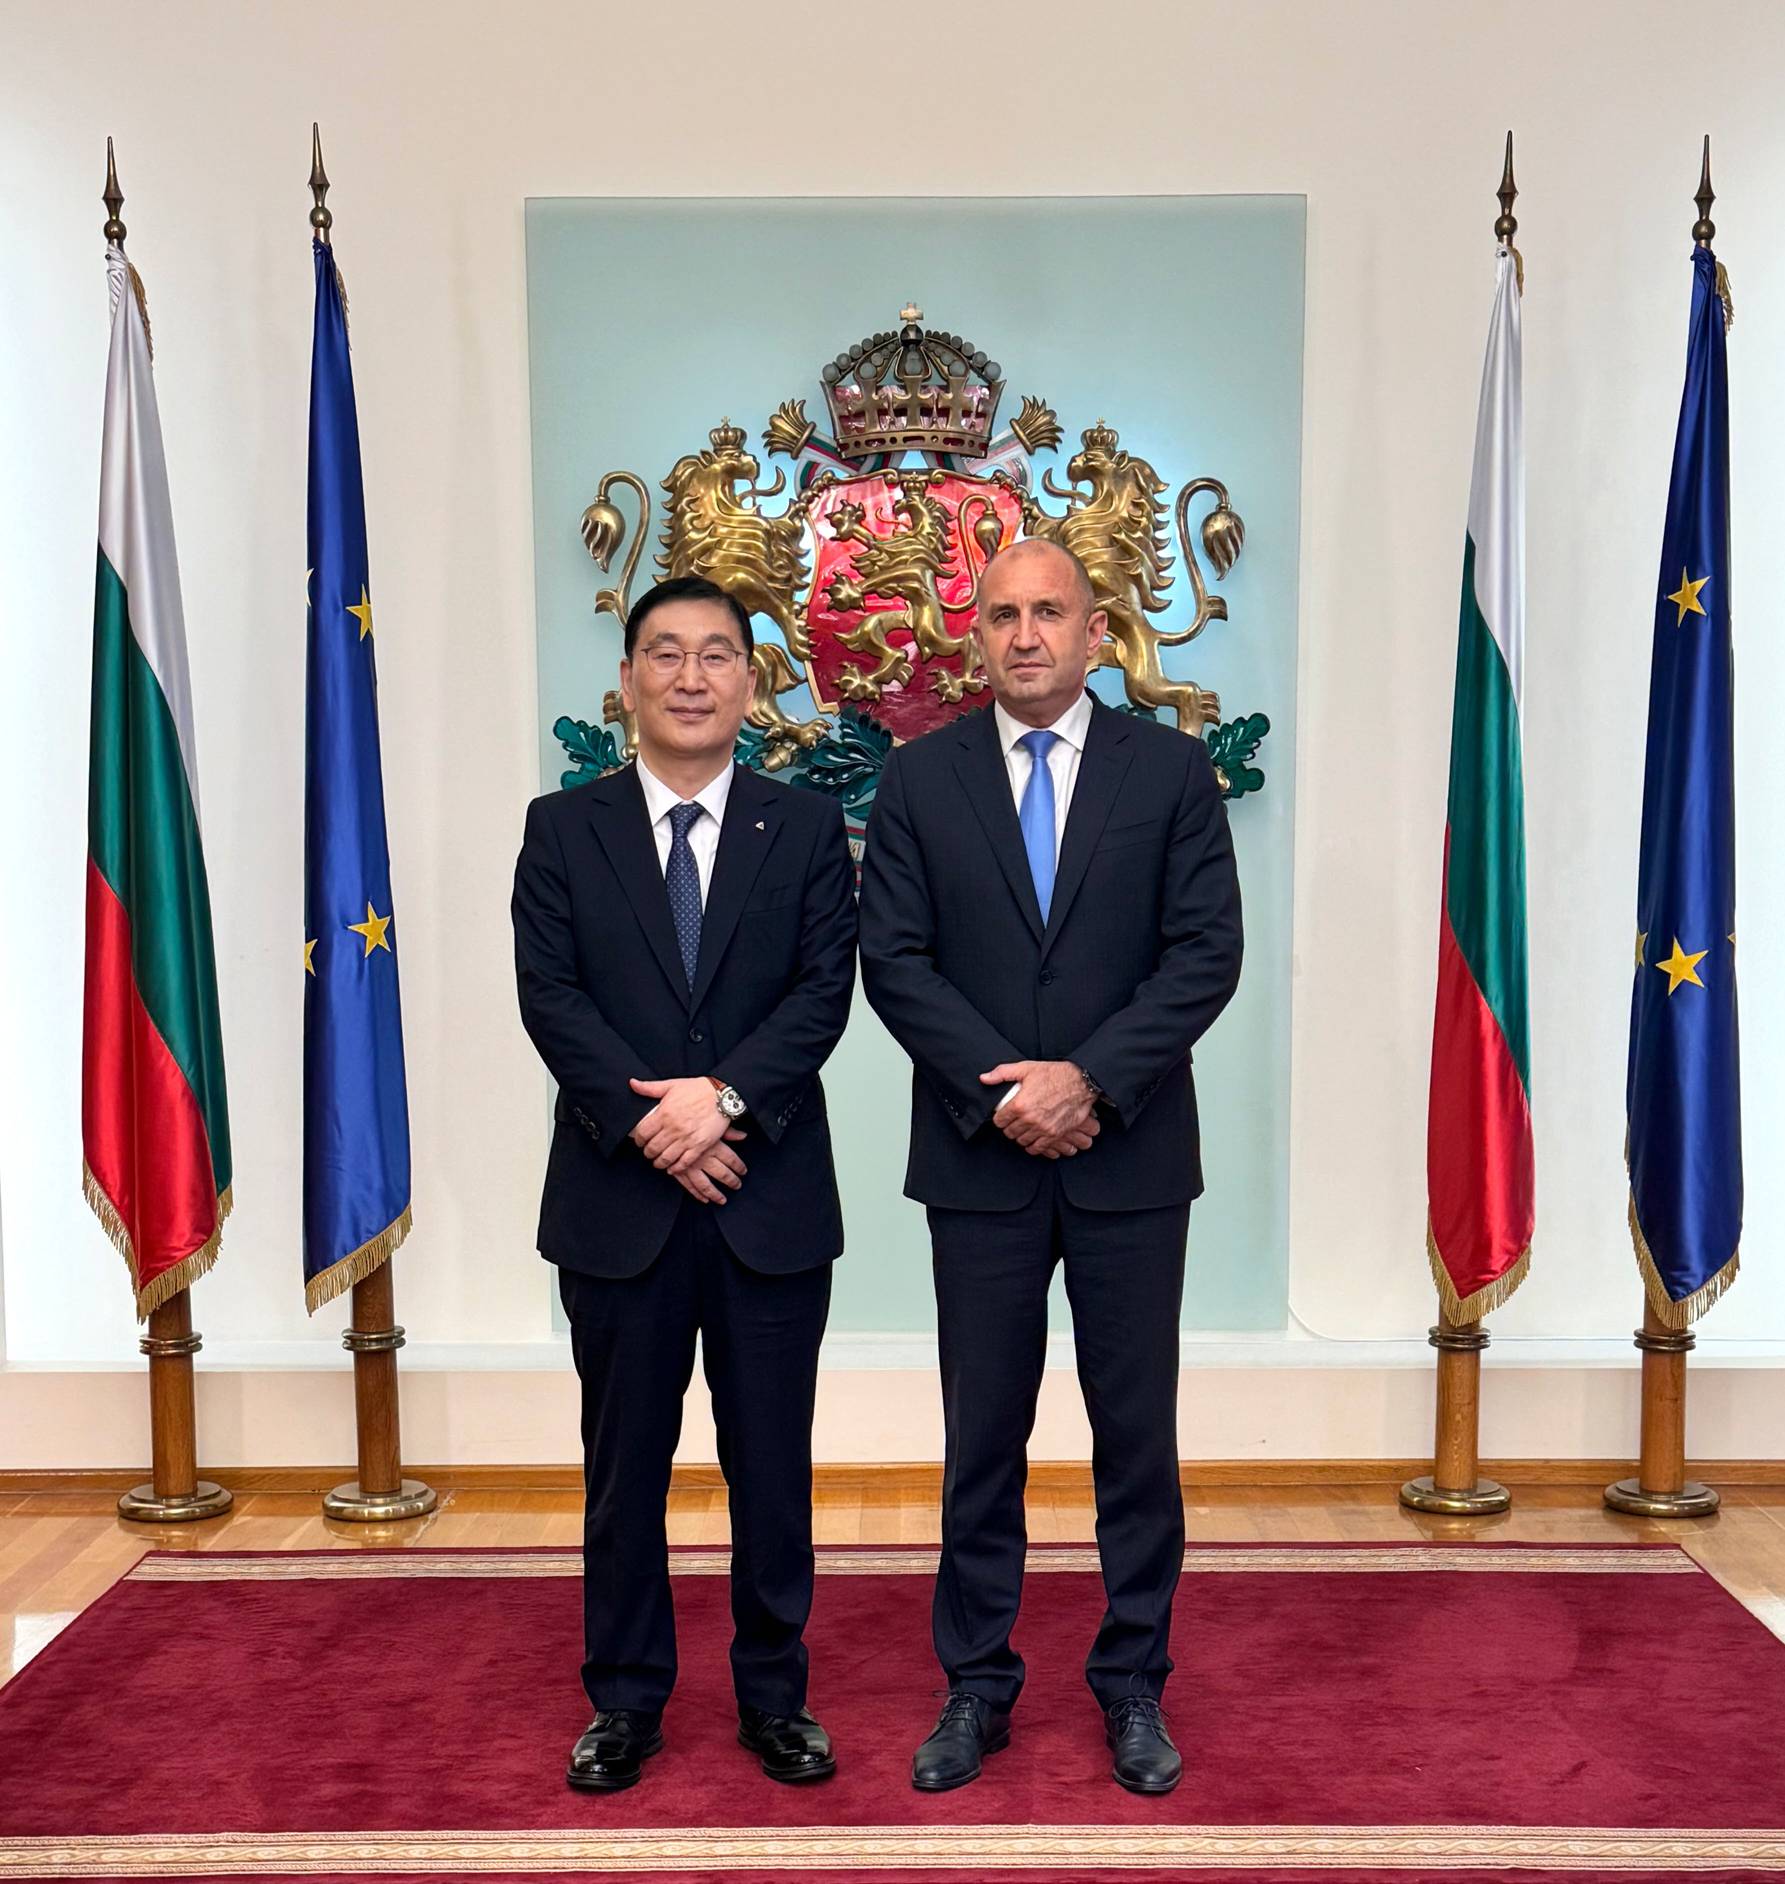 Йънг Джун Юн, президент и главен изпълнителен директор на Hyundai Engineering & Construction, се срещна с българския президент Румен Радев